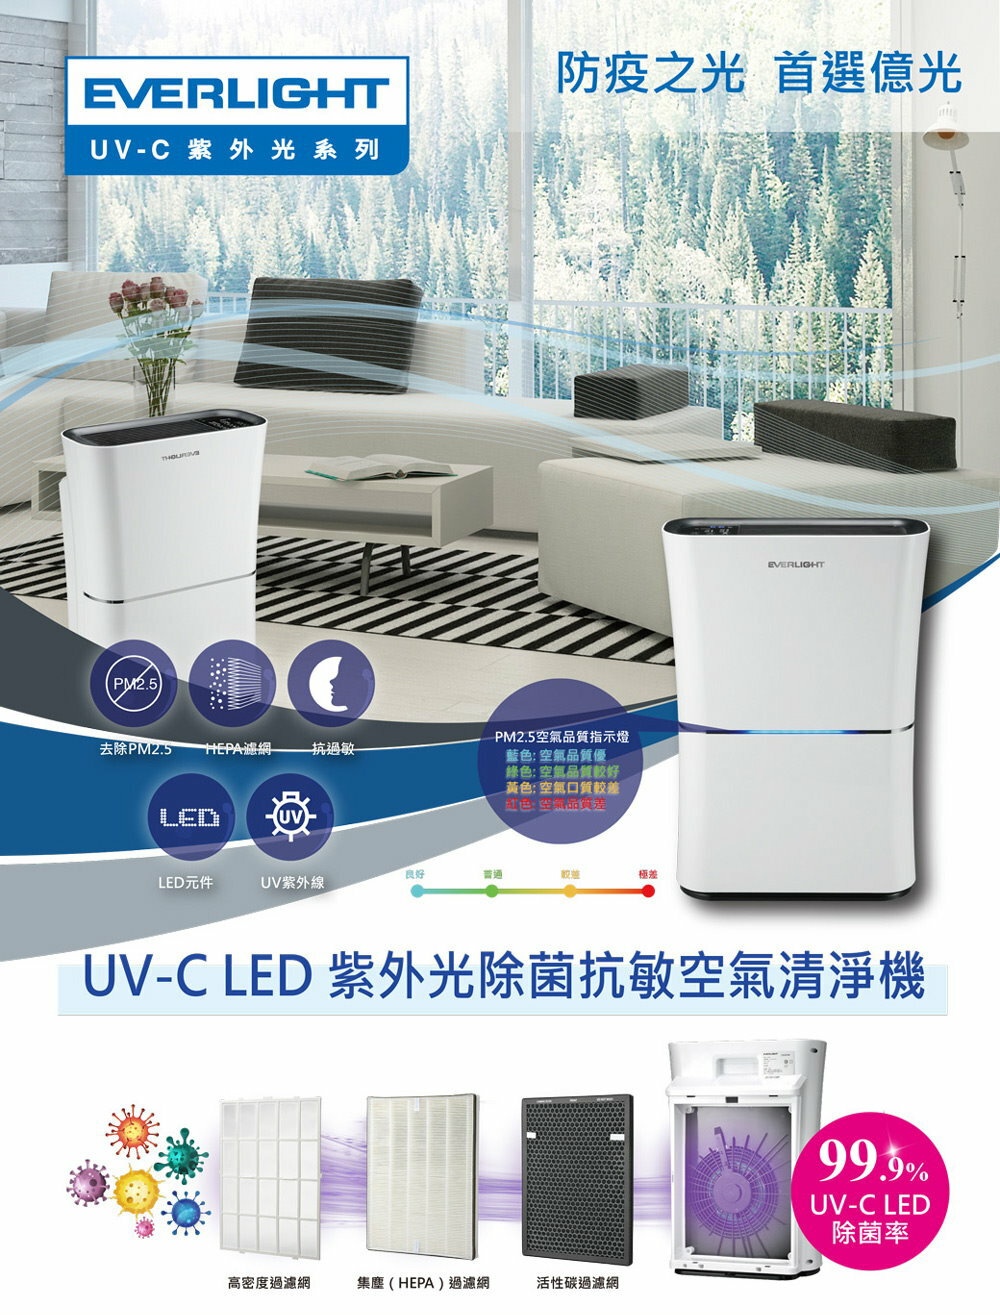 億光 UVC LED 紫外線殺菌光空氣清淨機 UV-C 殺菌抗敏 9-16坪適用 EL400F